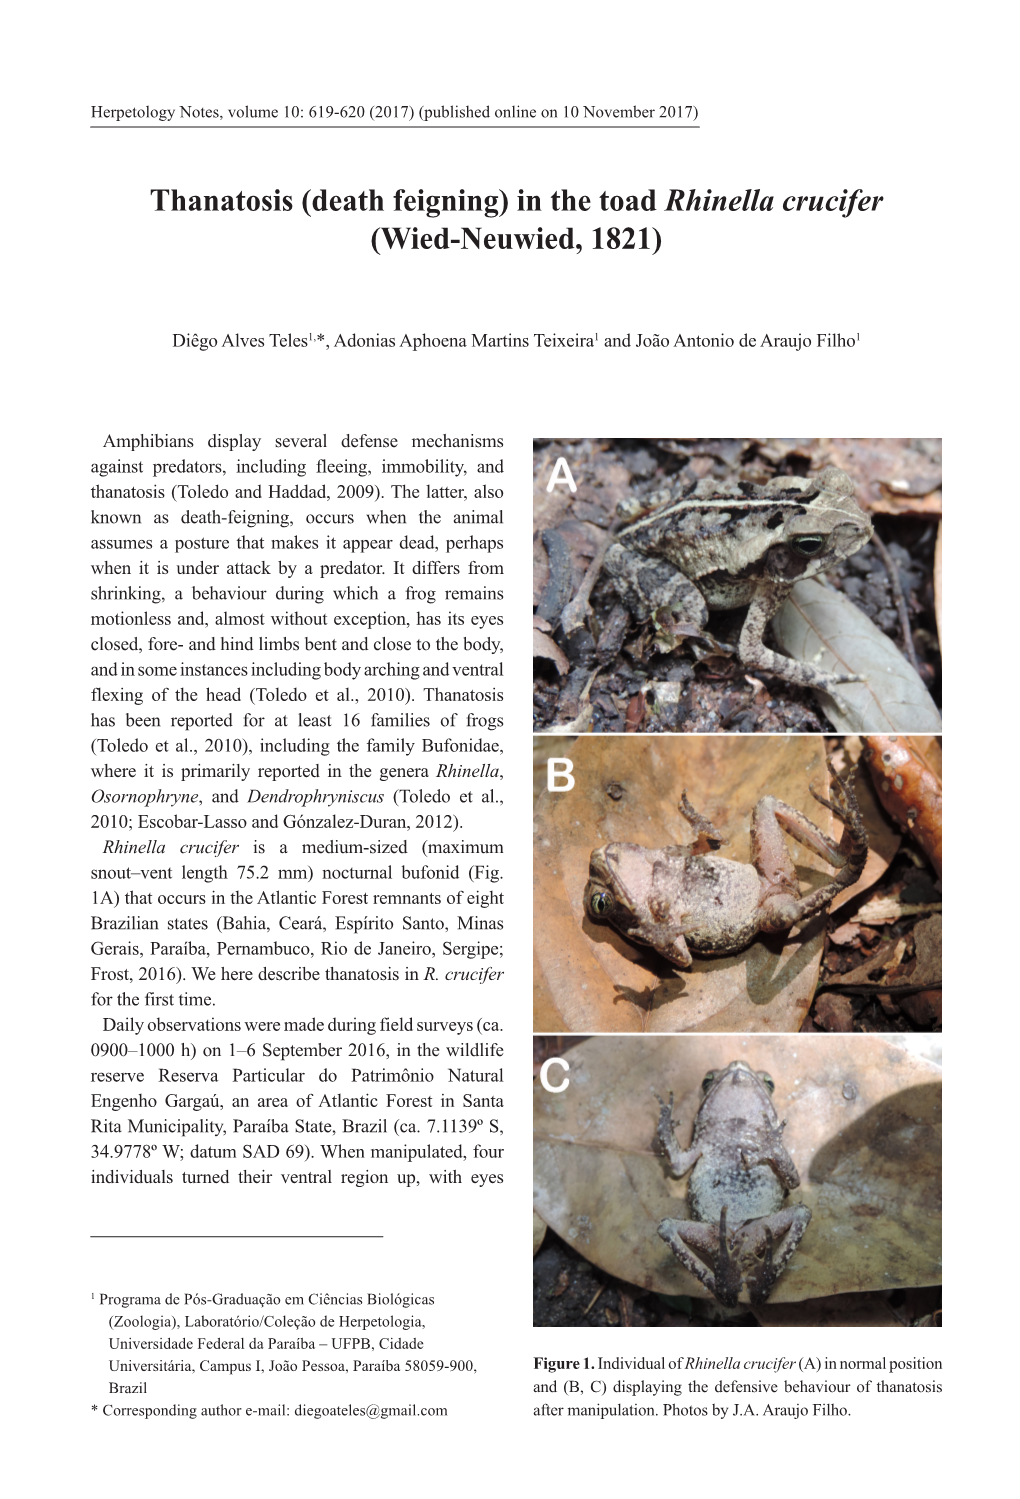 Thanatosis (Death Feigning) in the Toad Rhinella Crucifer (Wied-Neuwied, 1821)